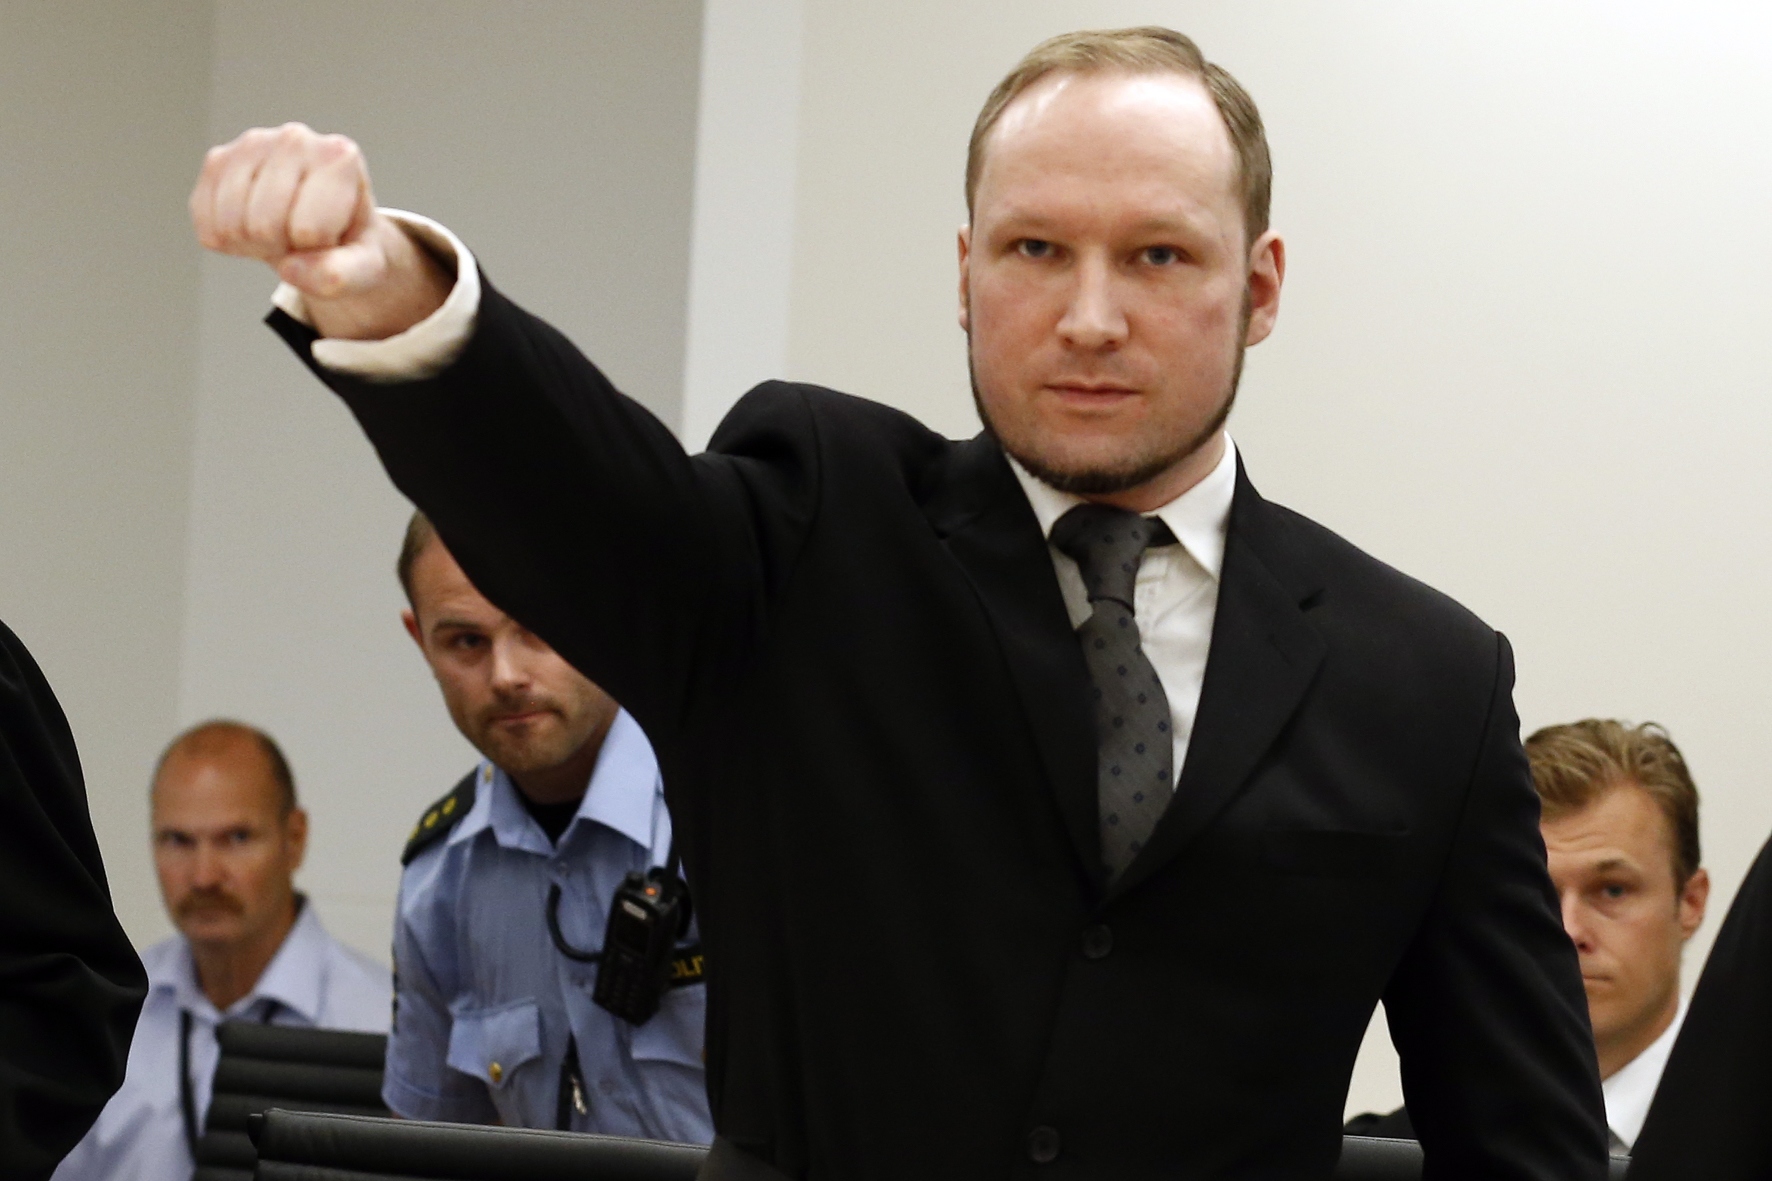 Anders Behring Breivik. Photo: AFP